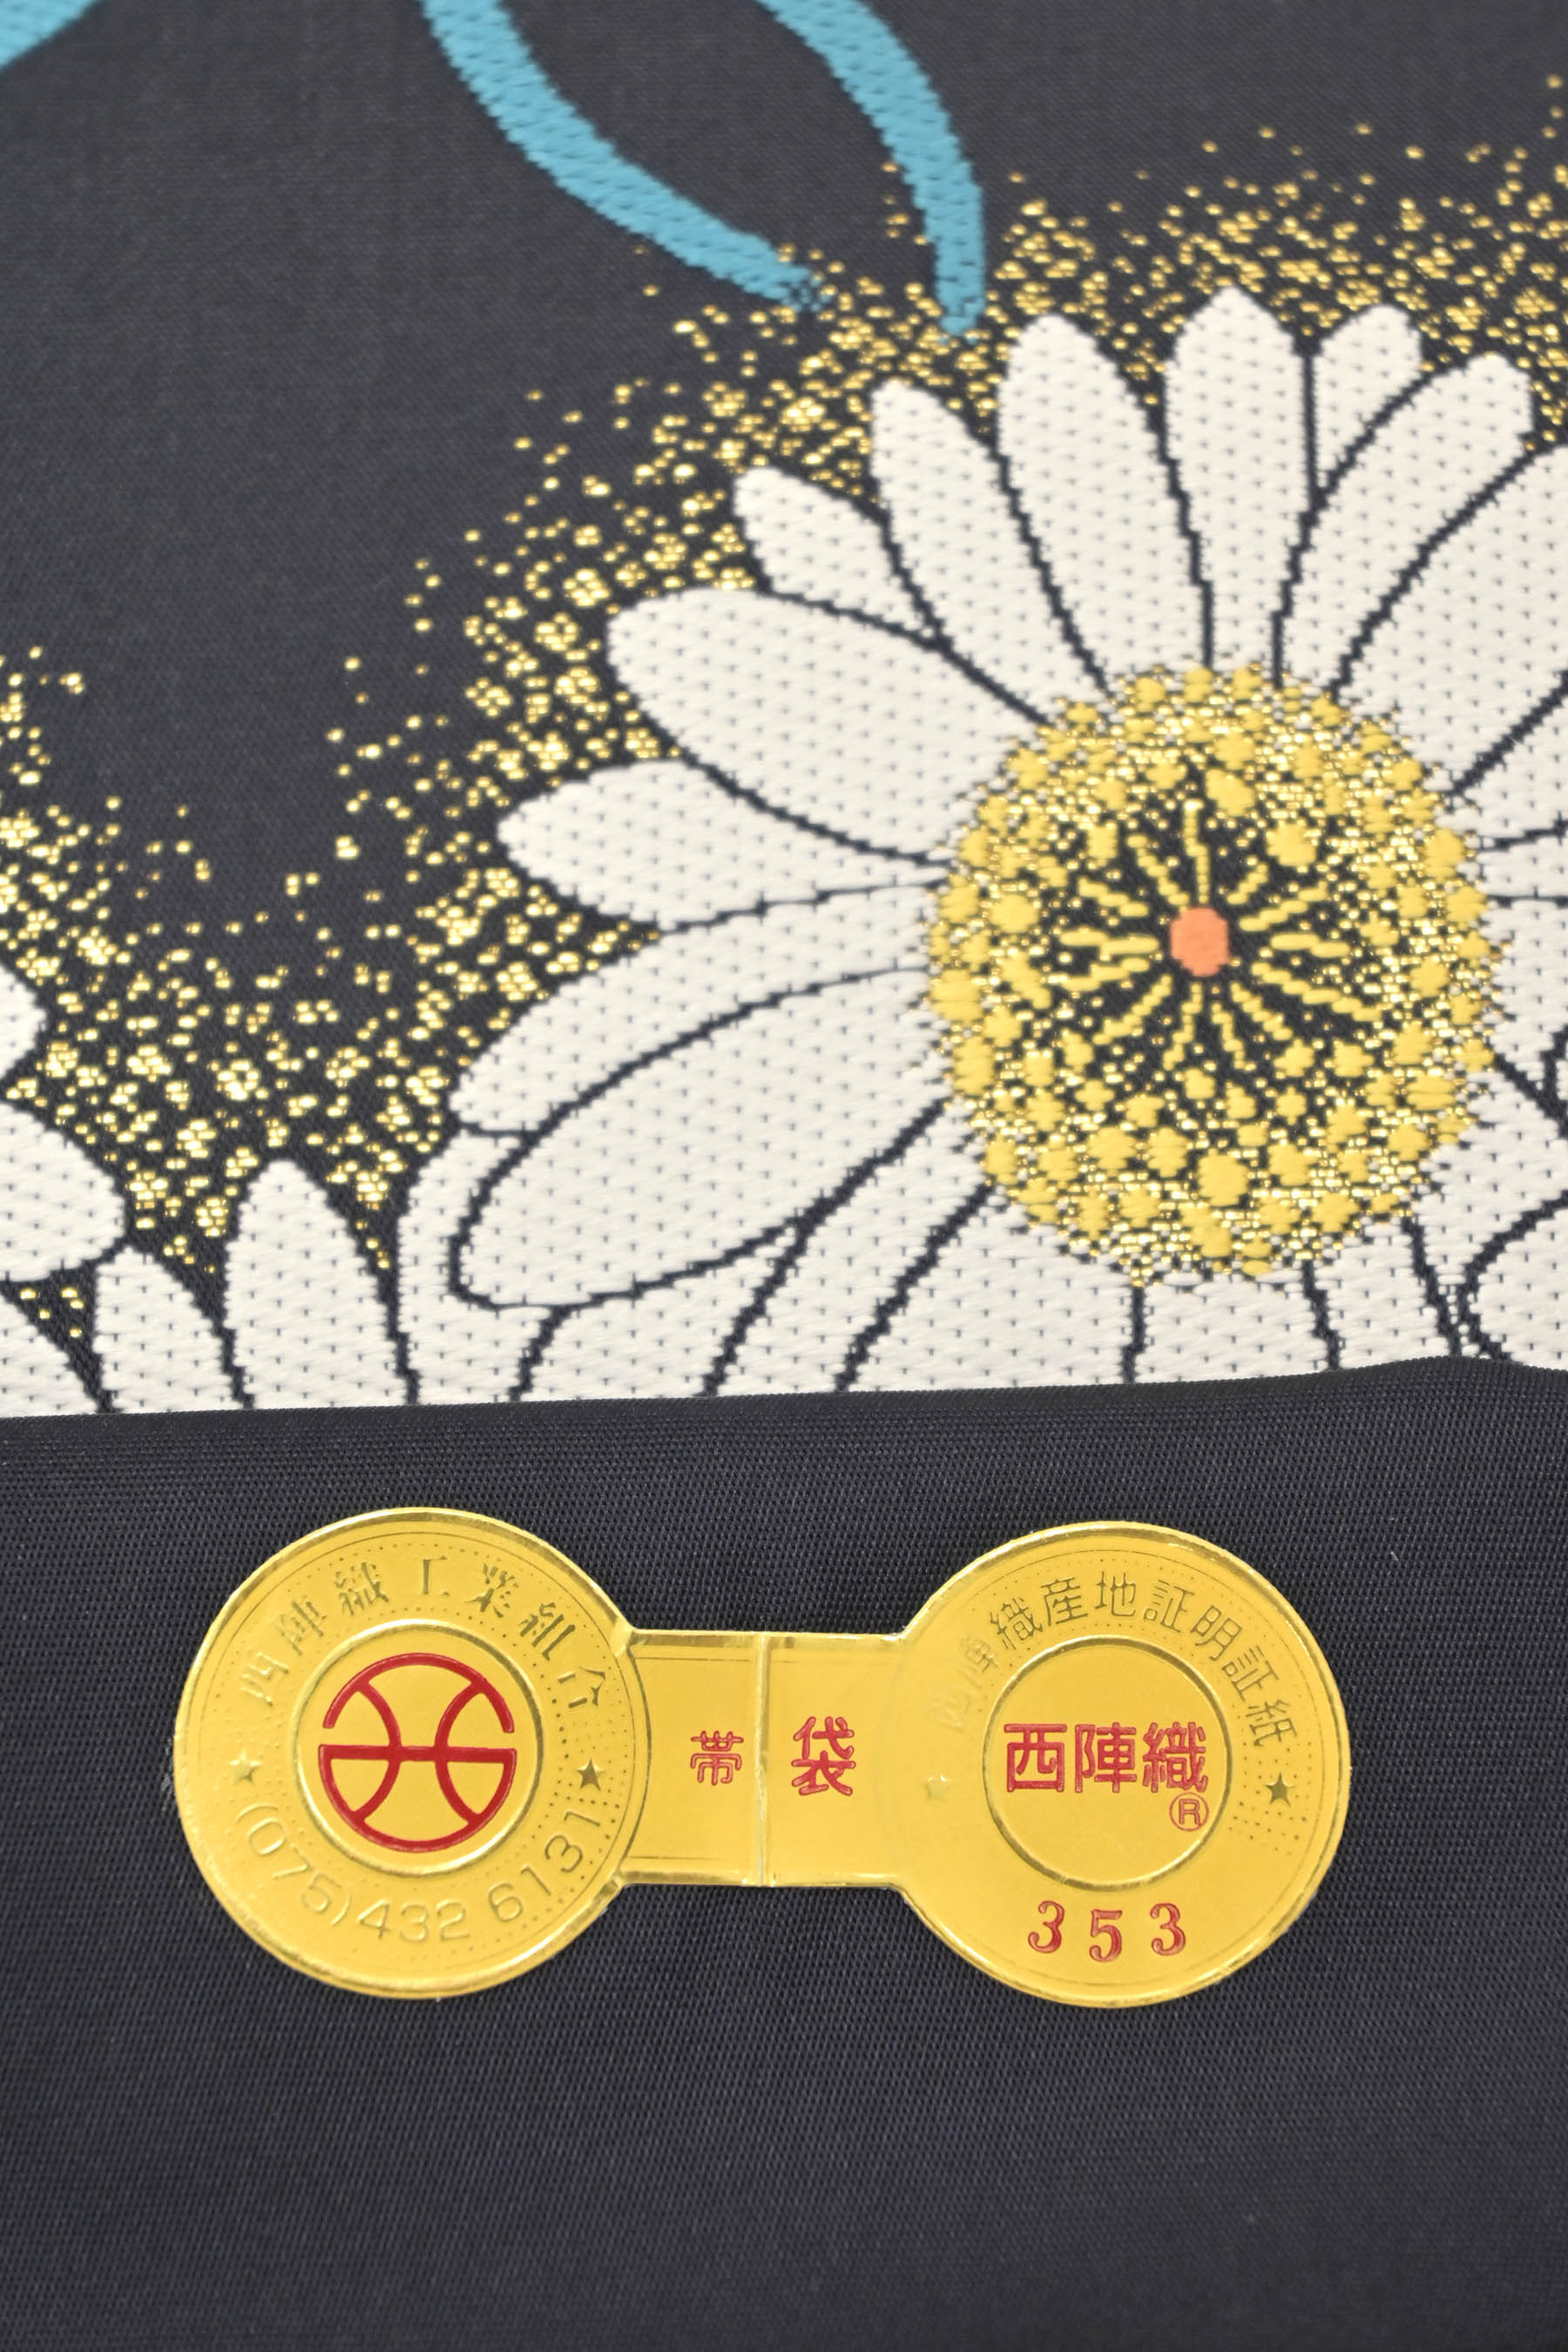 【高島織物】 特選西陣織袋帯 「白菊」 名門の確かな織！ 奥深い魅力あふれる織物。 長期在庫でアウトレット価格！